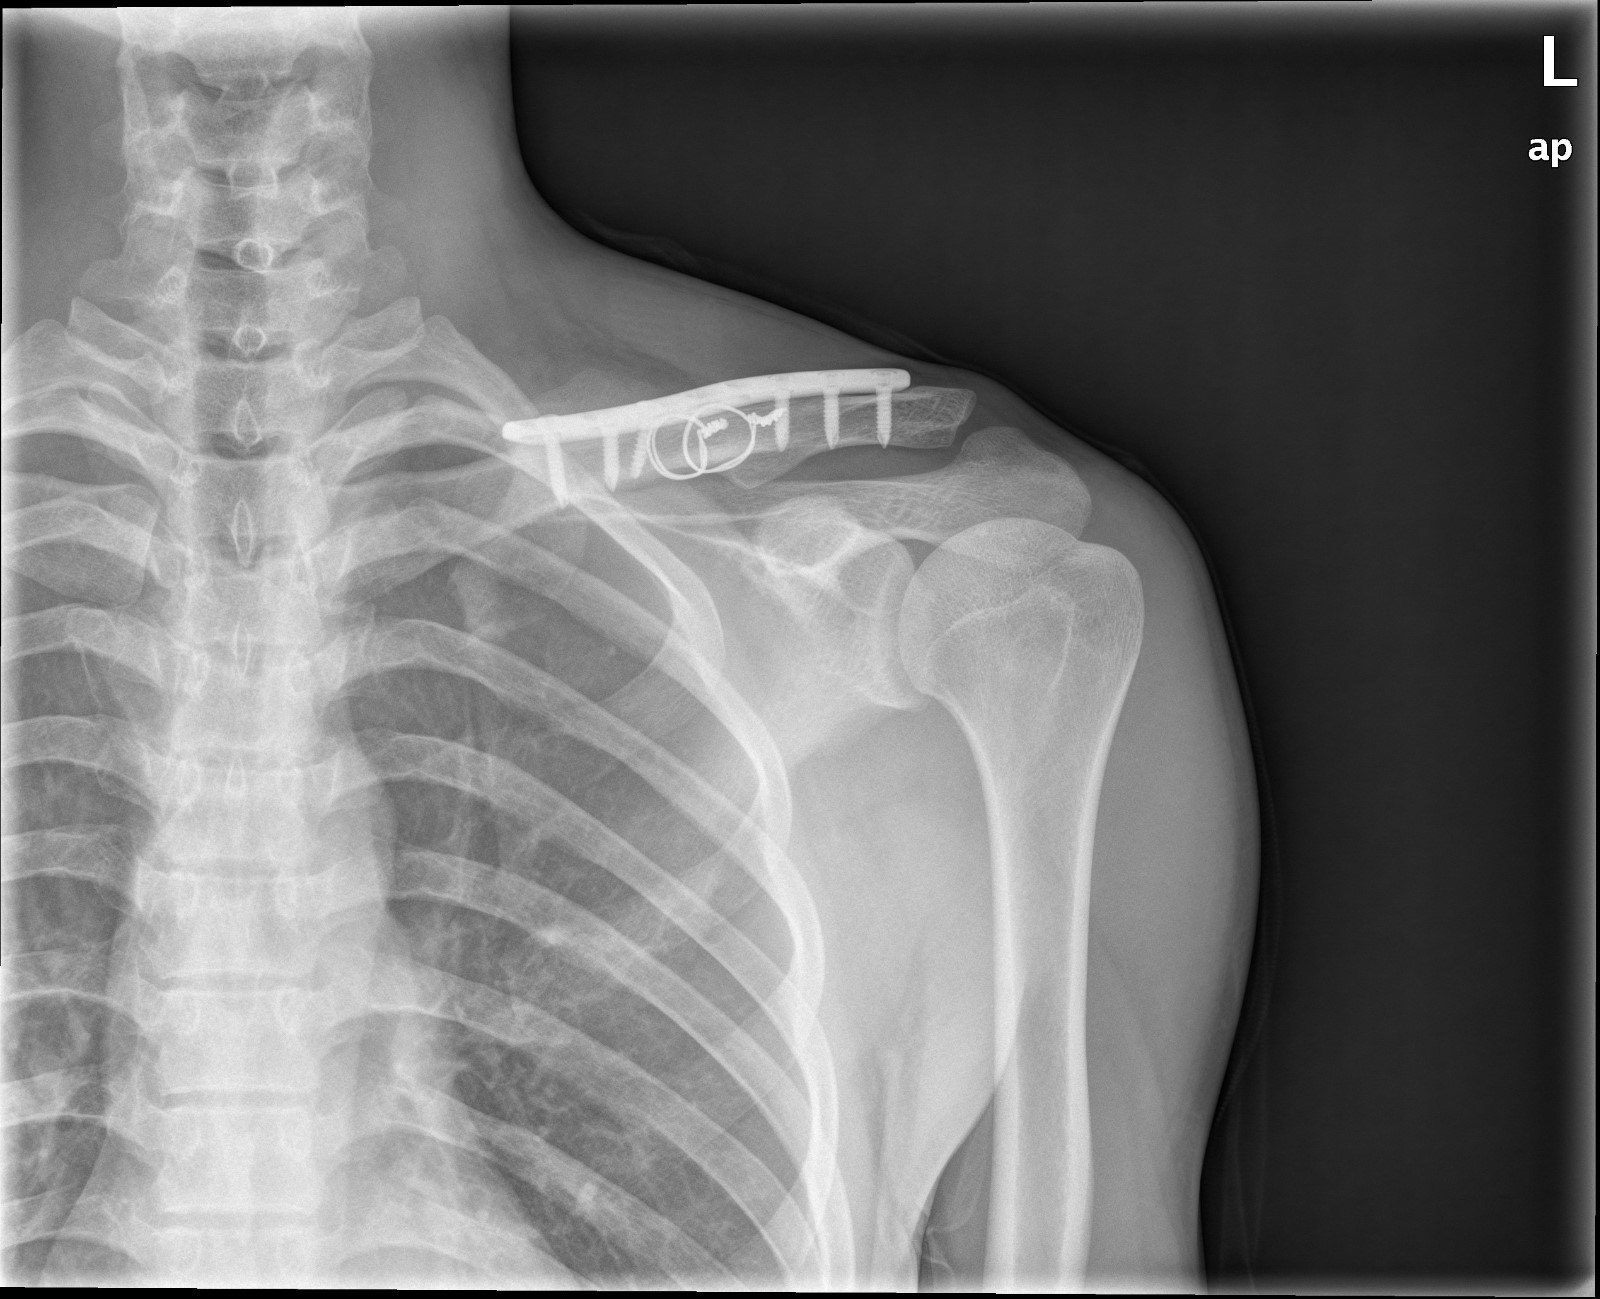 锁骨骨折及肩锁脱位的术后康复 肩锁关节脱位 好大夫在线